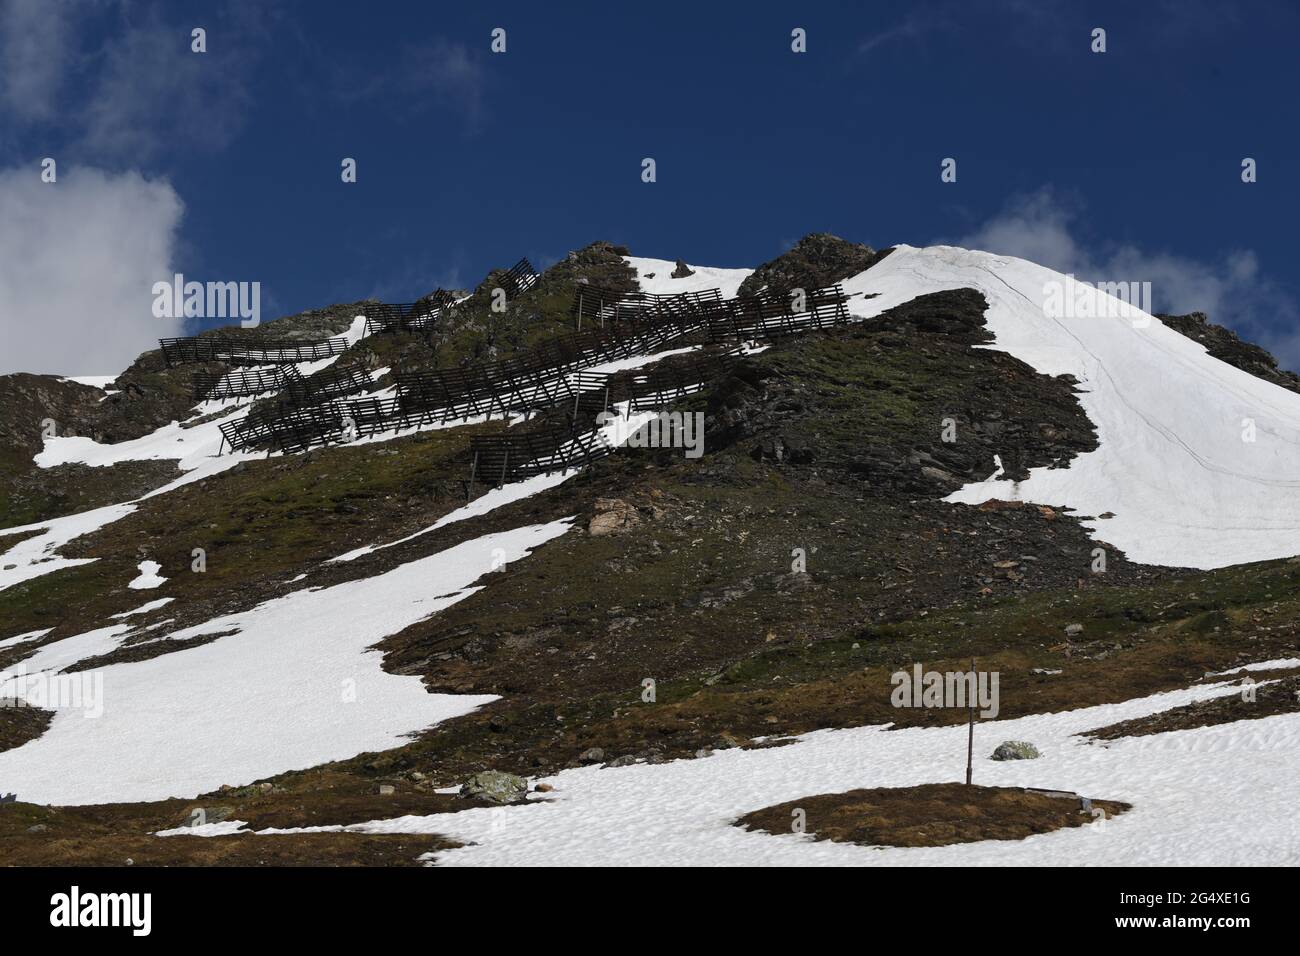 Impressionen von der Grossglockner Hochalpenstrasse mit Blick auf die weindruckende und möchten Berge der österreichischen Alpen Stock Photo